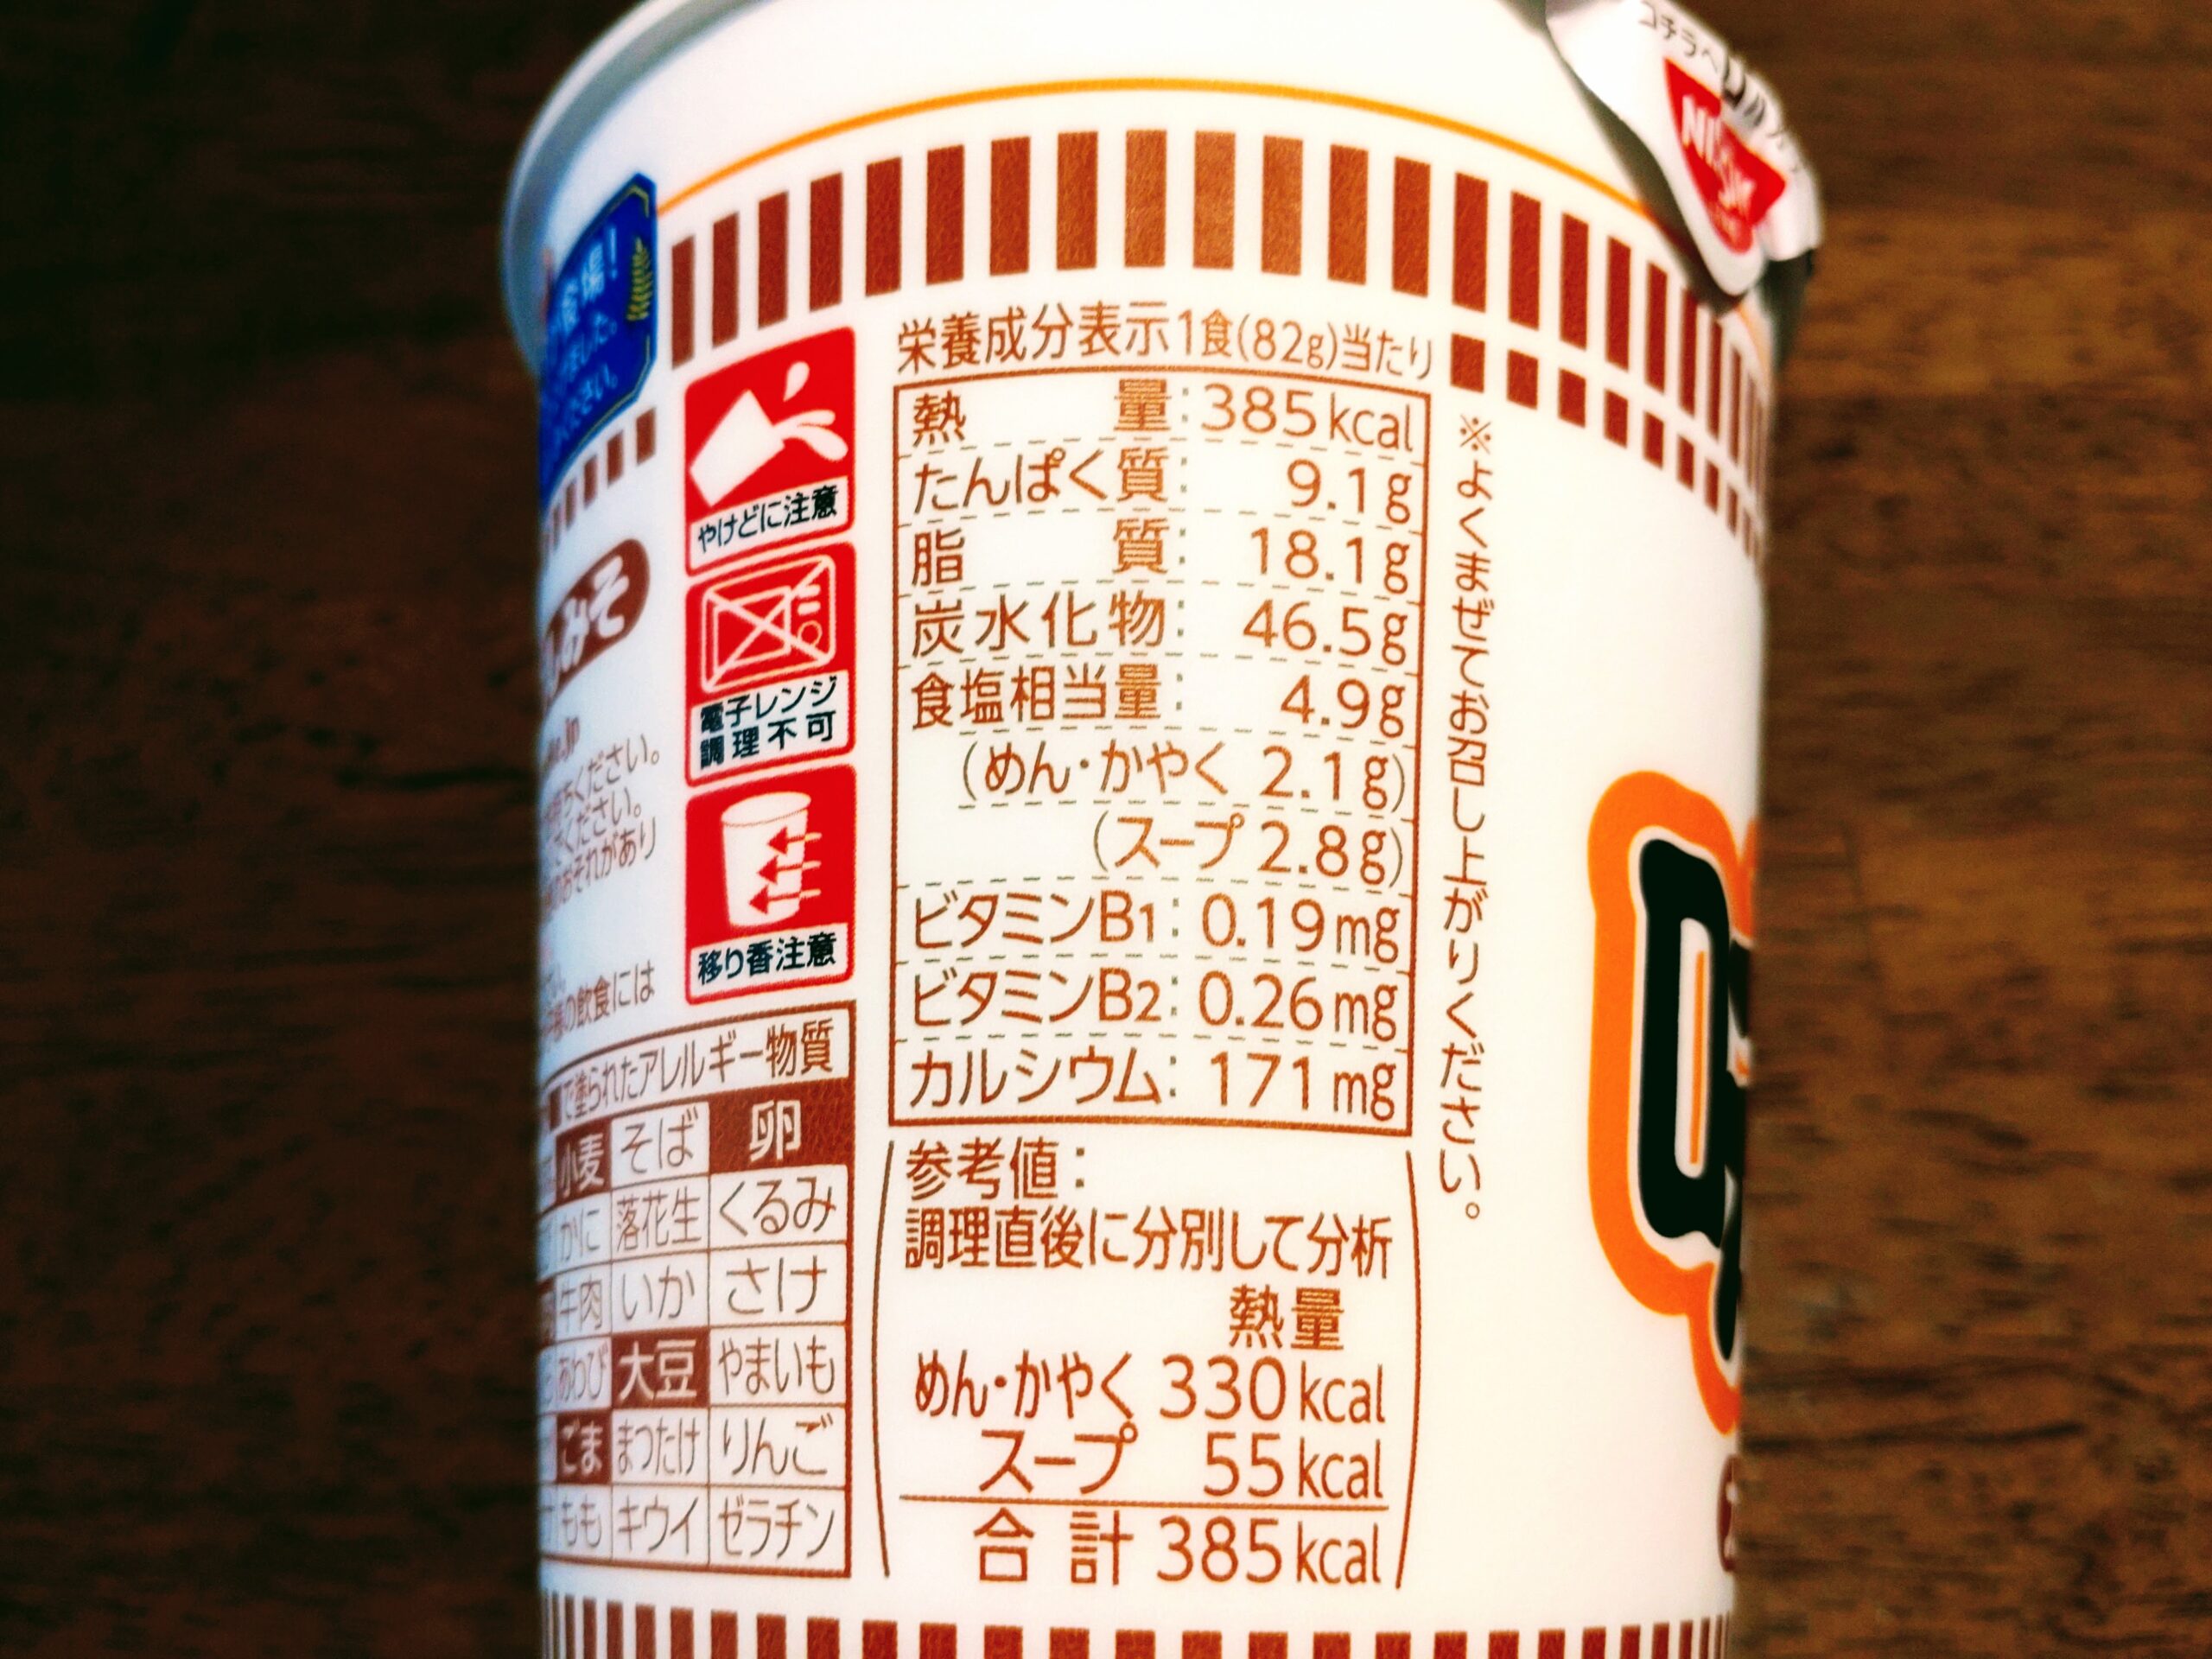 カップヌードル 味噌の栄養成分表示